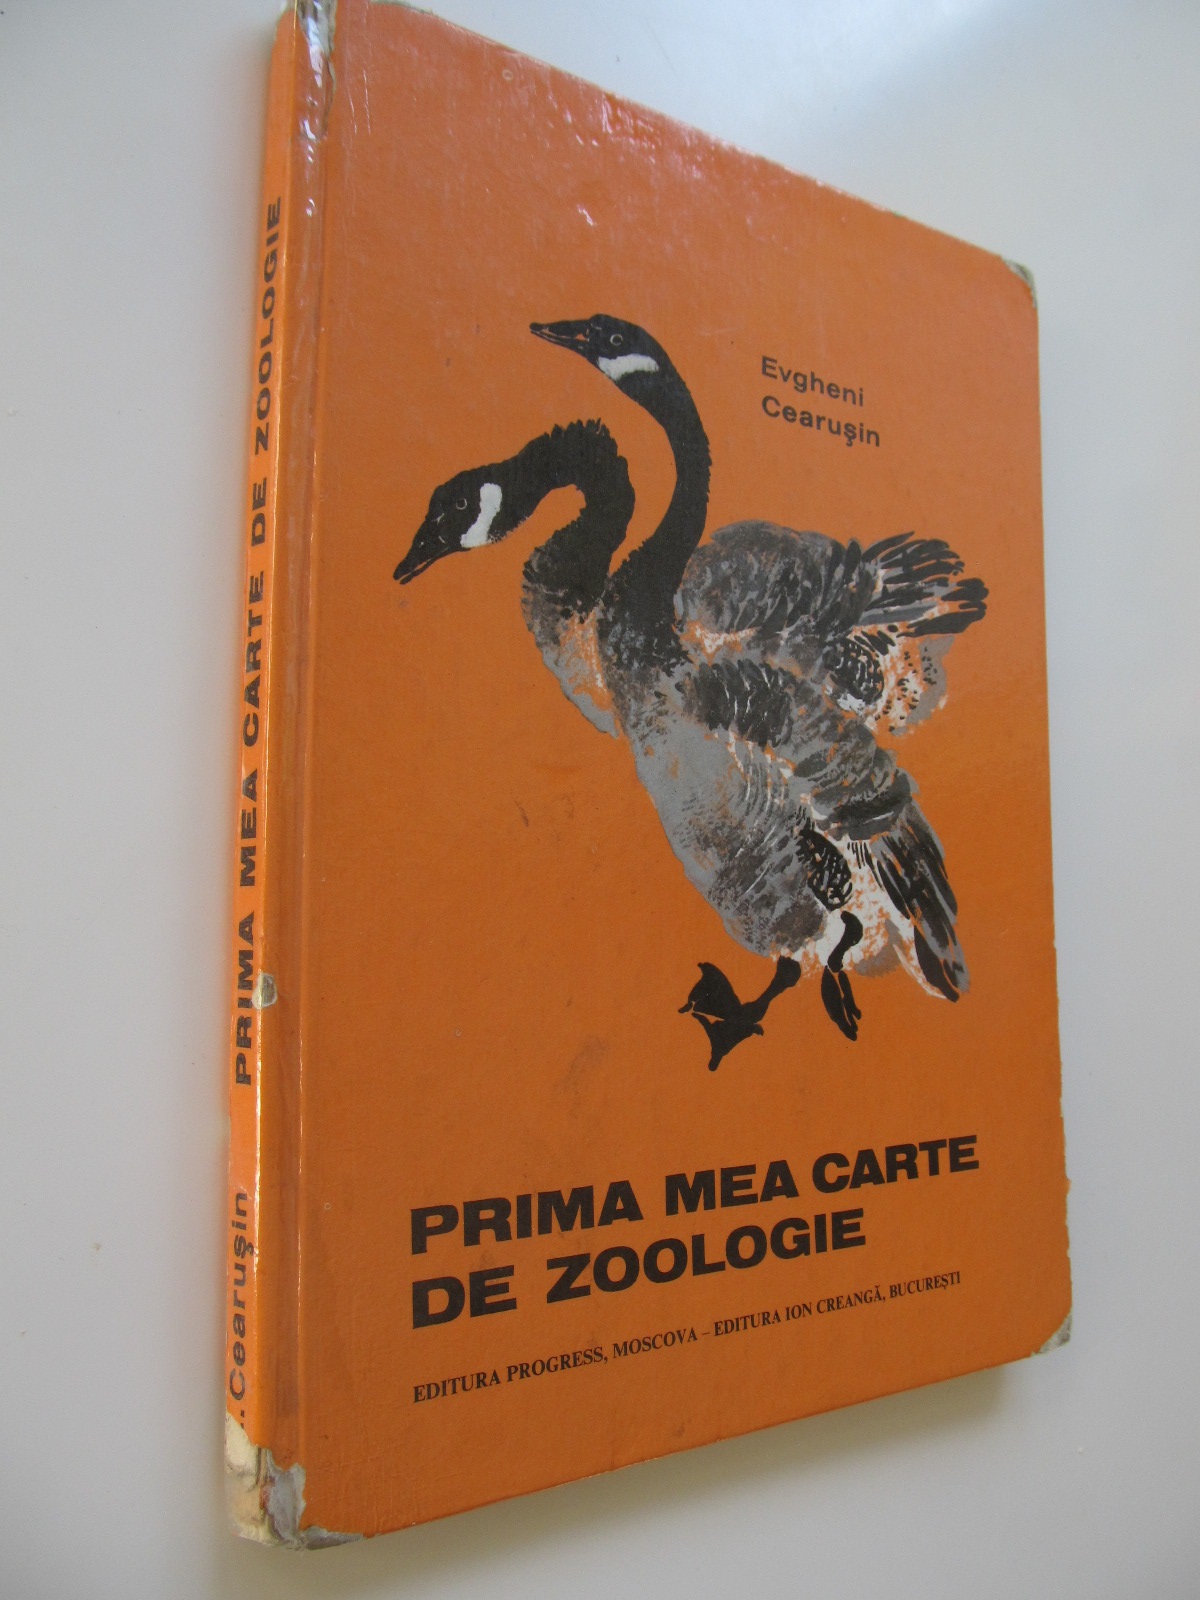 Prima mea carte de zoologie - Evgheni Cearusin | Detalii carte